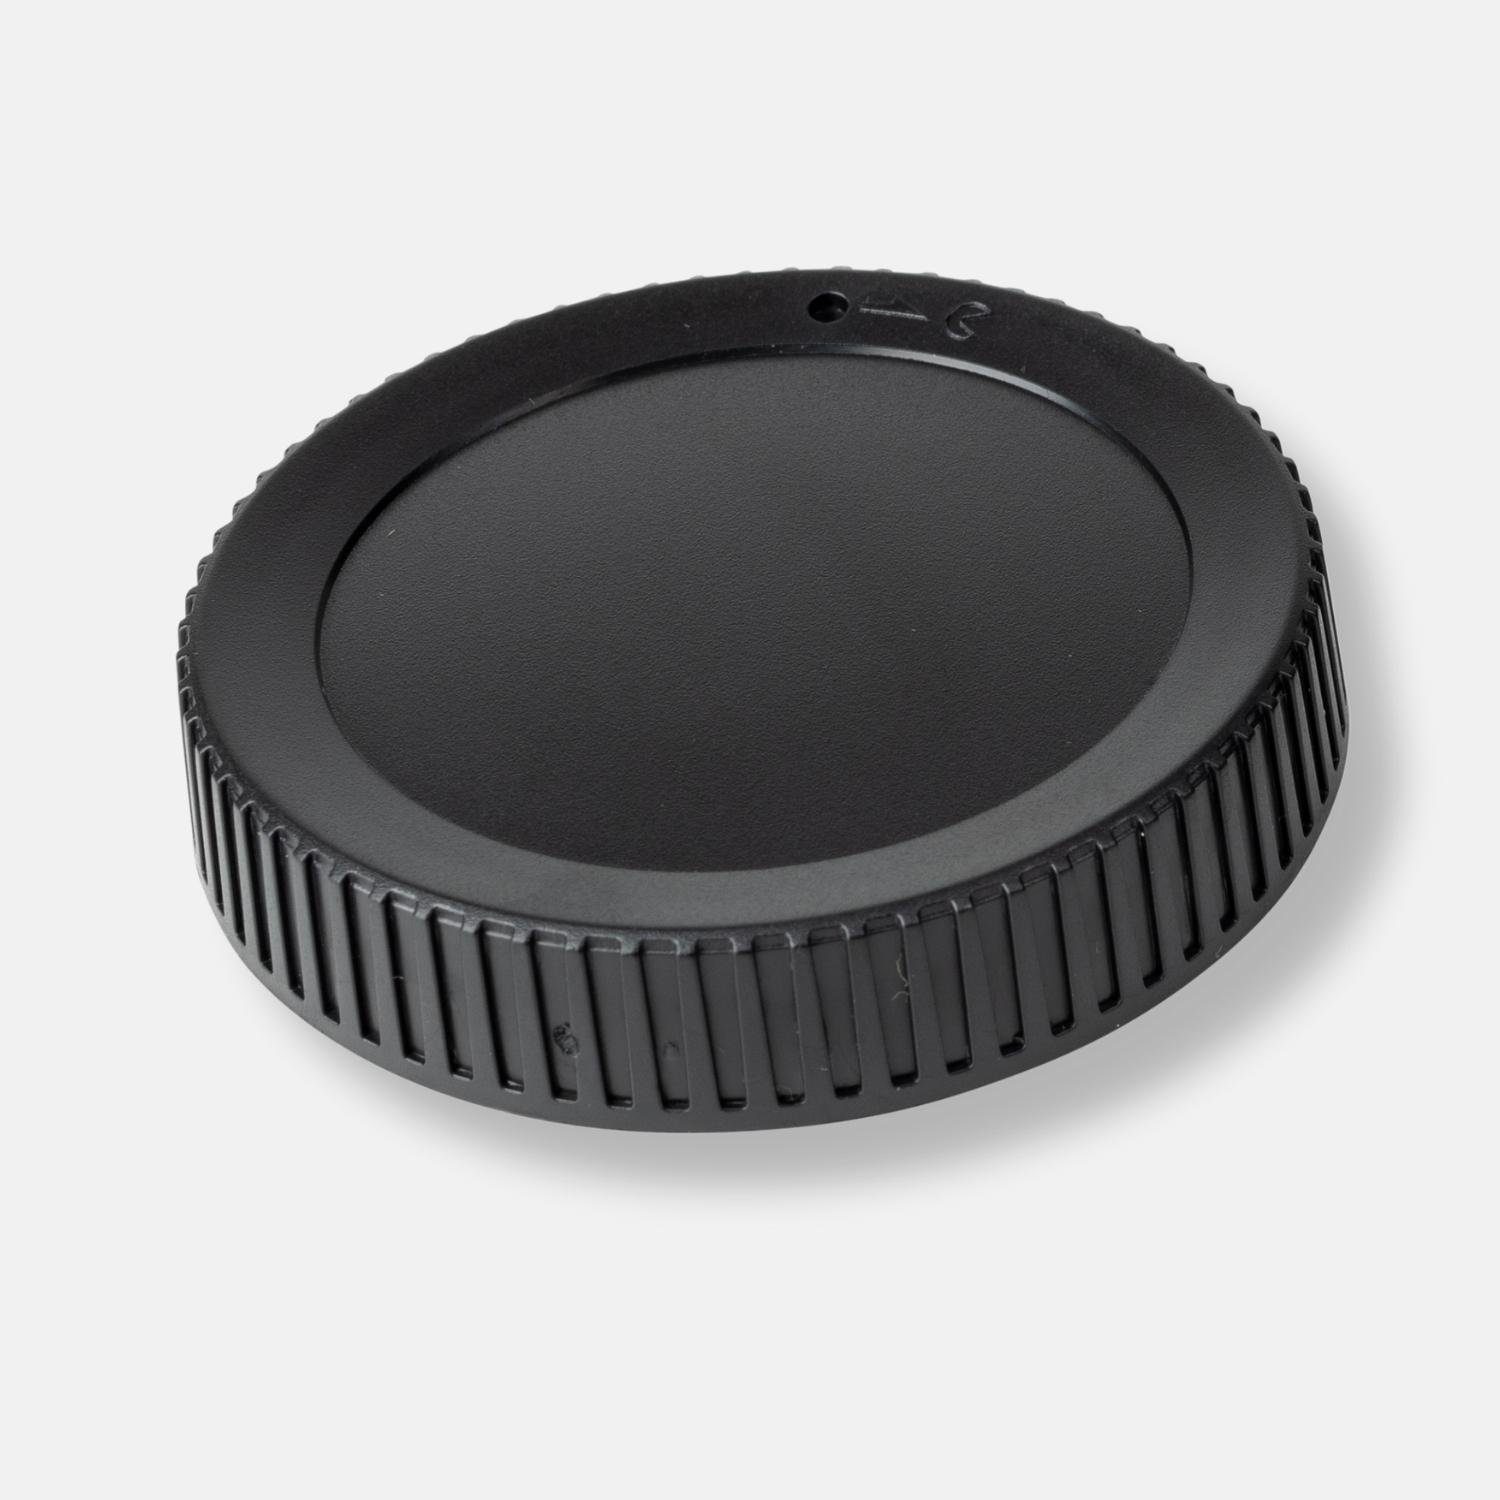 Objektivrückdeckel für Objektivrückdeckel Z-Mount Lens-Aid Nikon